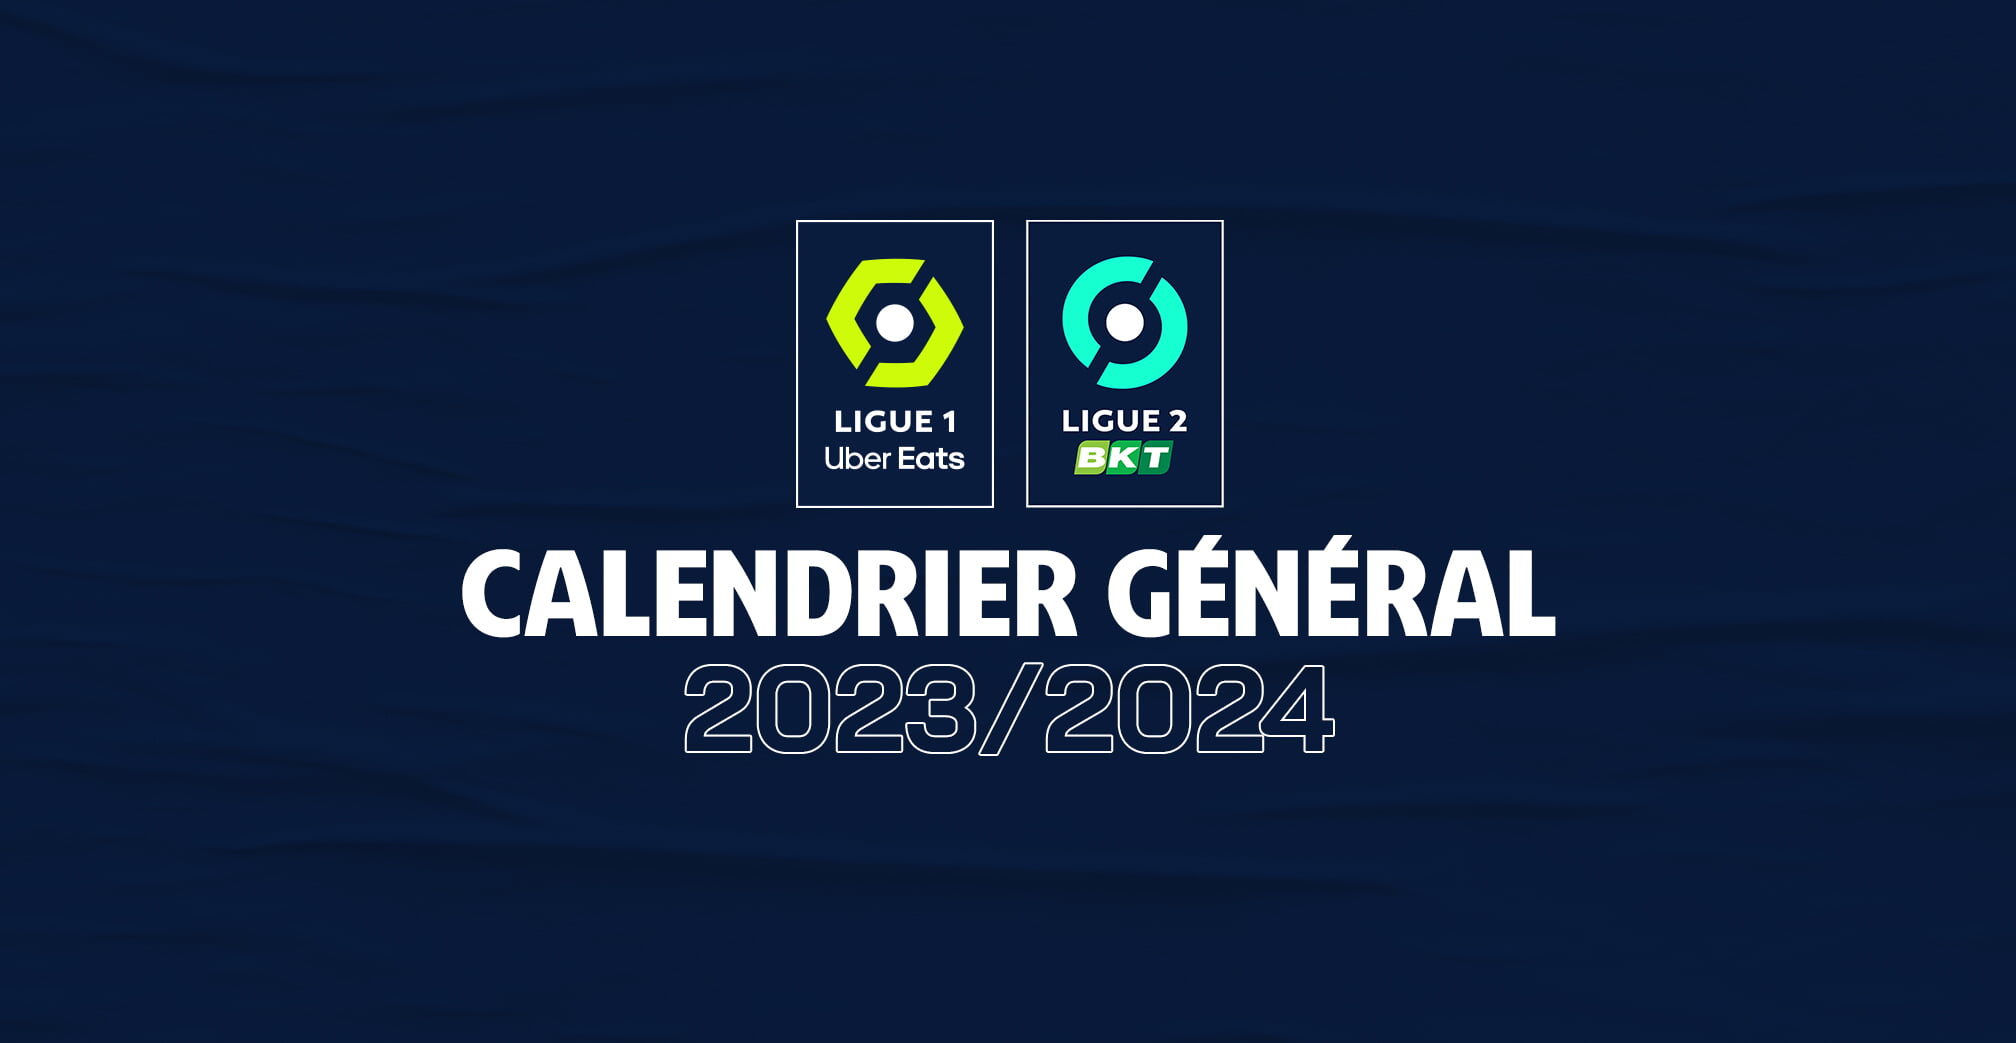 Calendrier 2023/24 Les premières dates